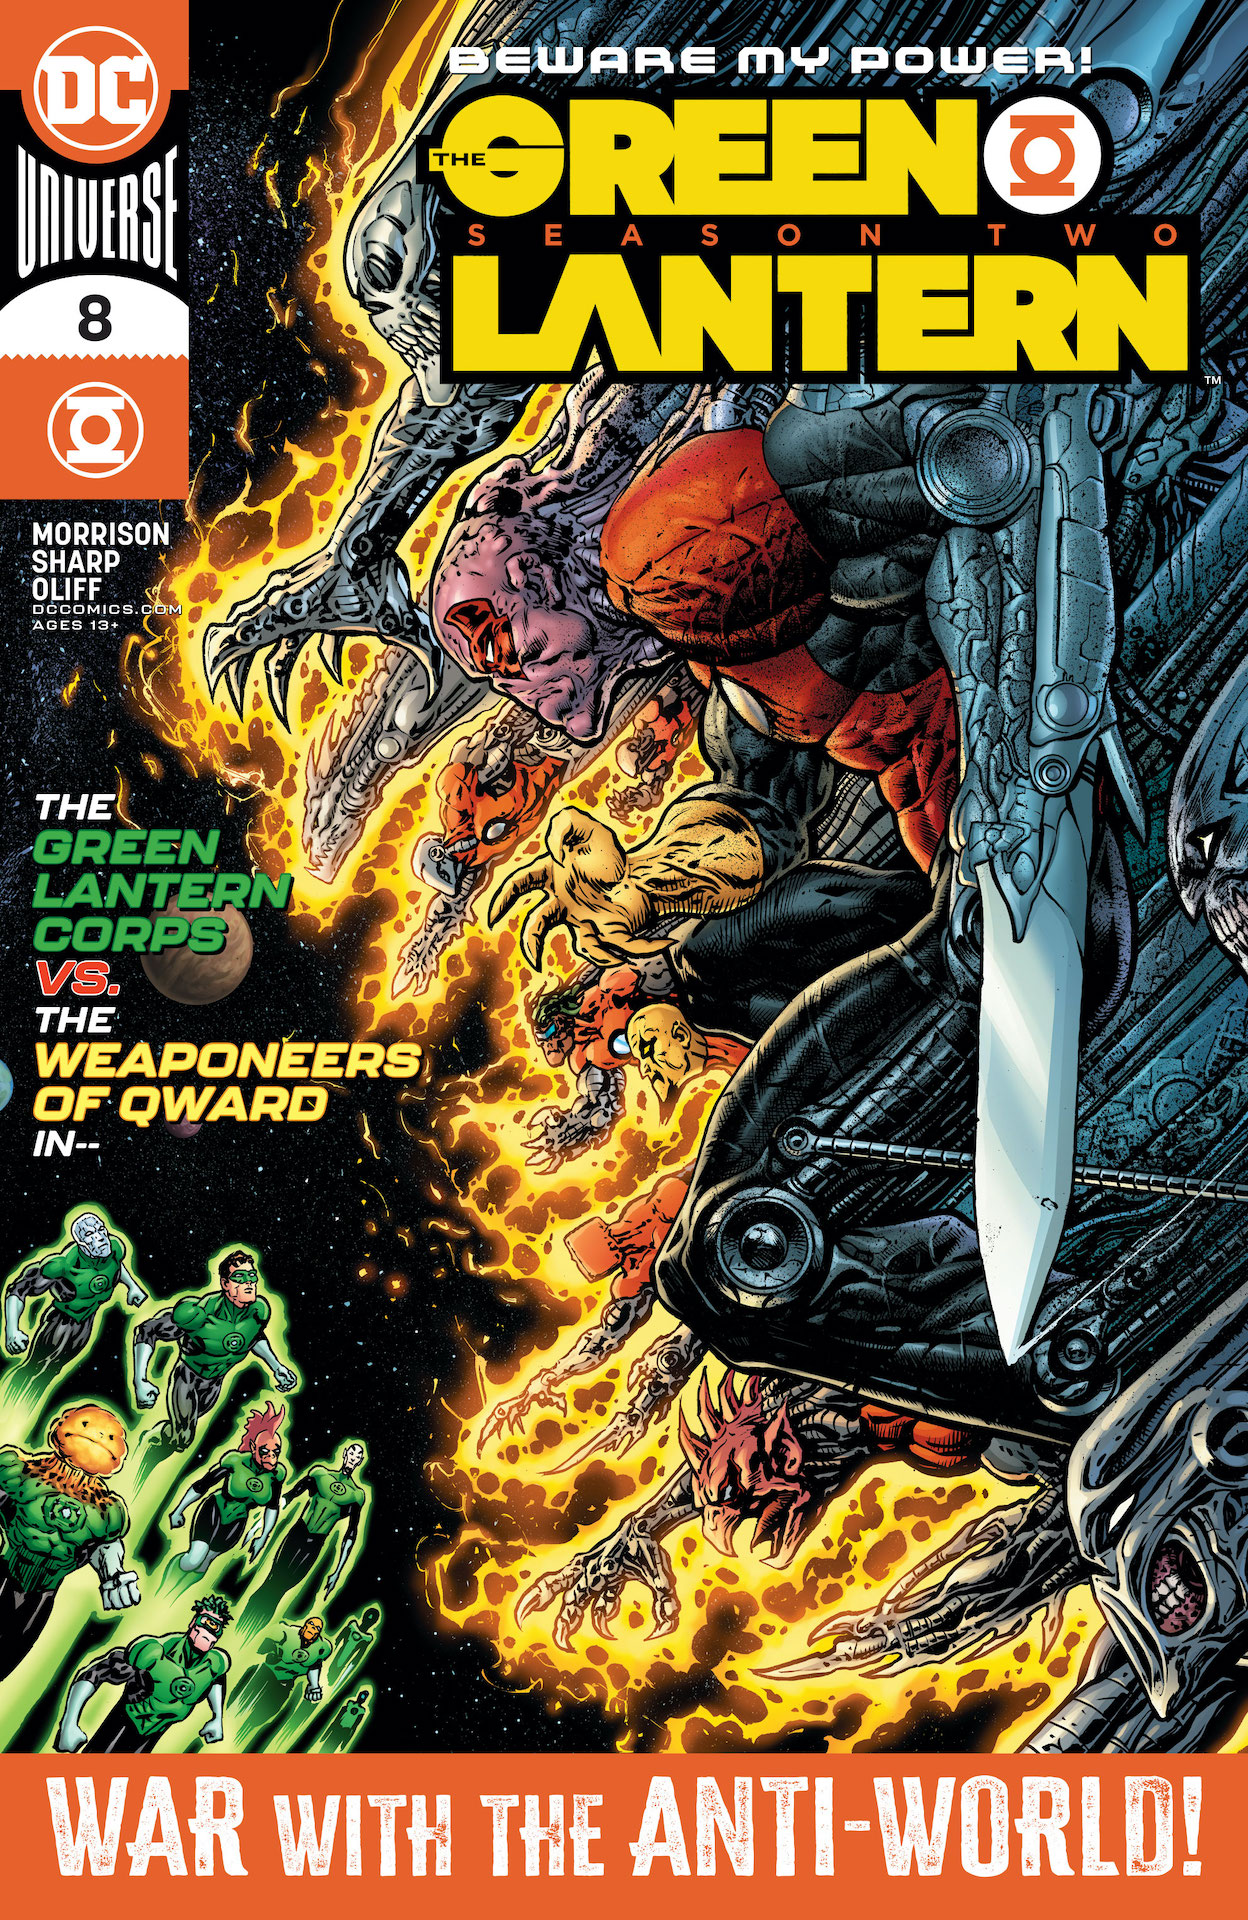 DC Preview: The Green Lantern Season Two #8